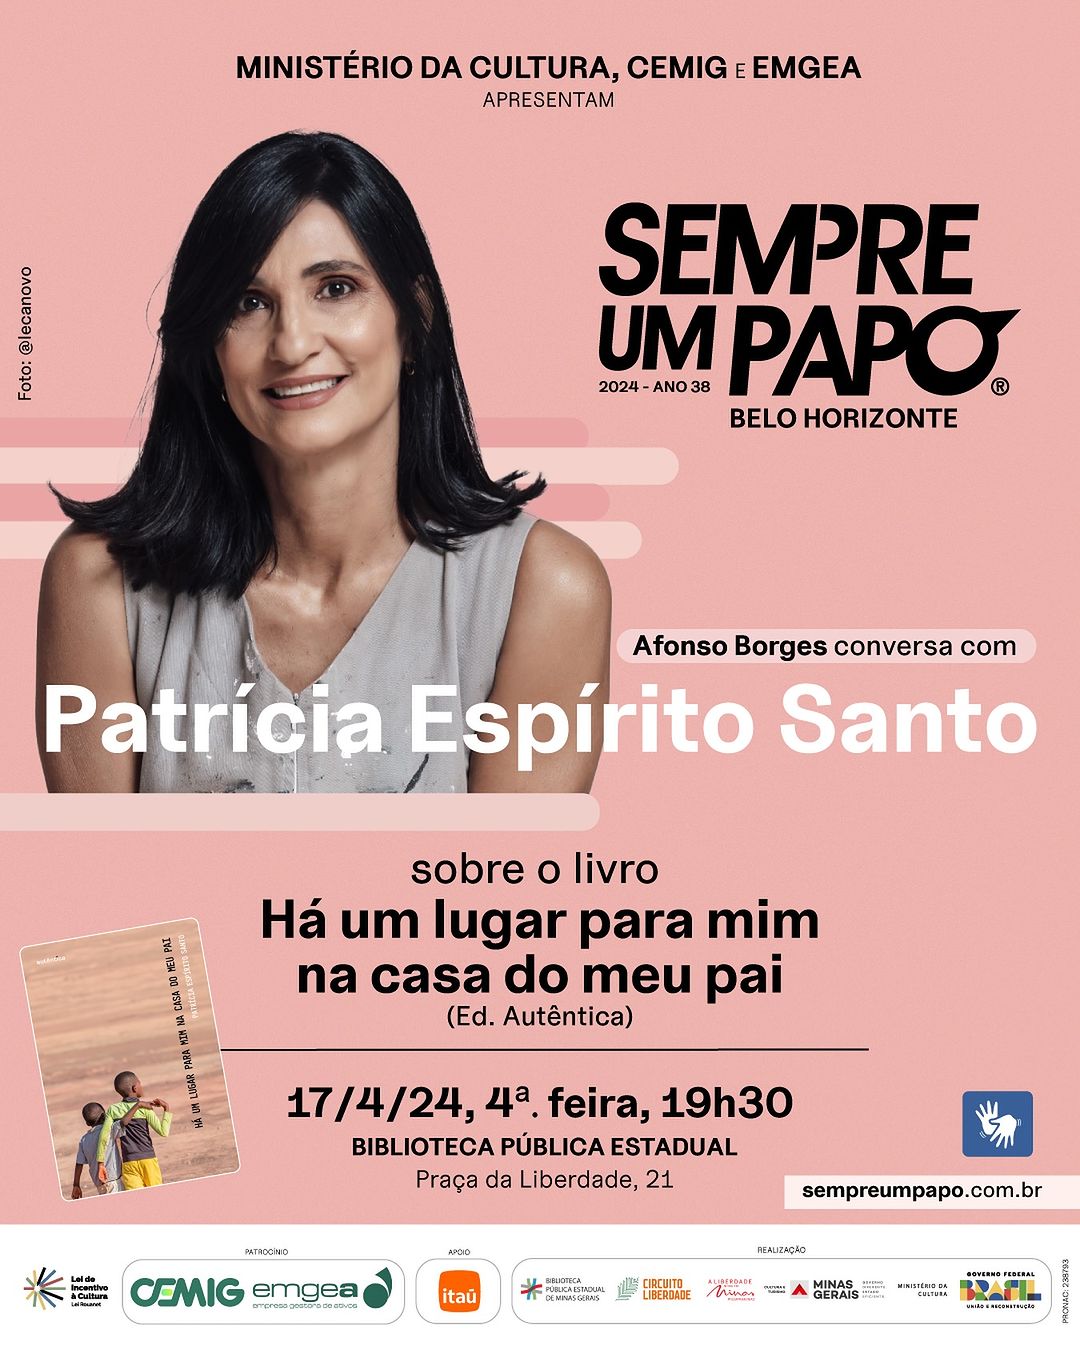 Patrícia Espírito Santo lança o livro “Há Um Lugar Para Mim Na Casa Do Meu Pai” (Editora Autêntica) a partir das 19h30, no Teatro José Aparecido de Oliveira, do dia 17 de abril, quarta feira.